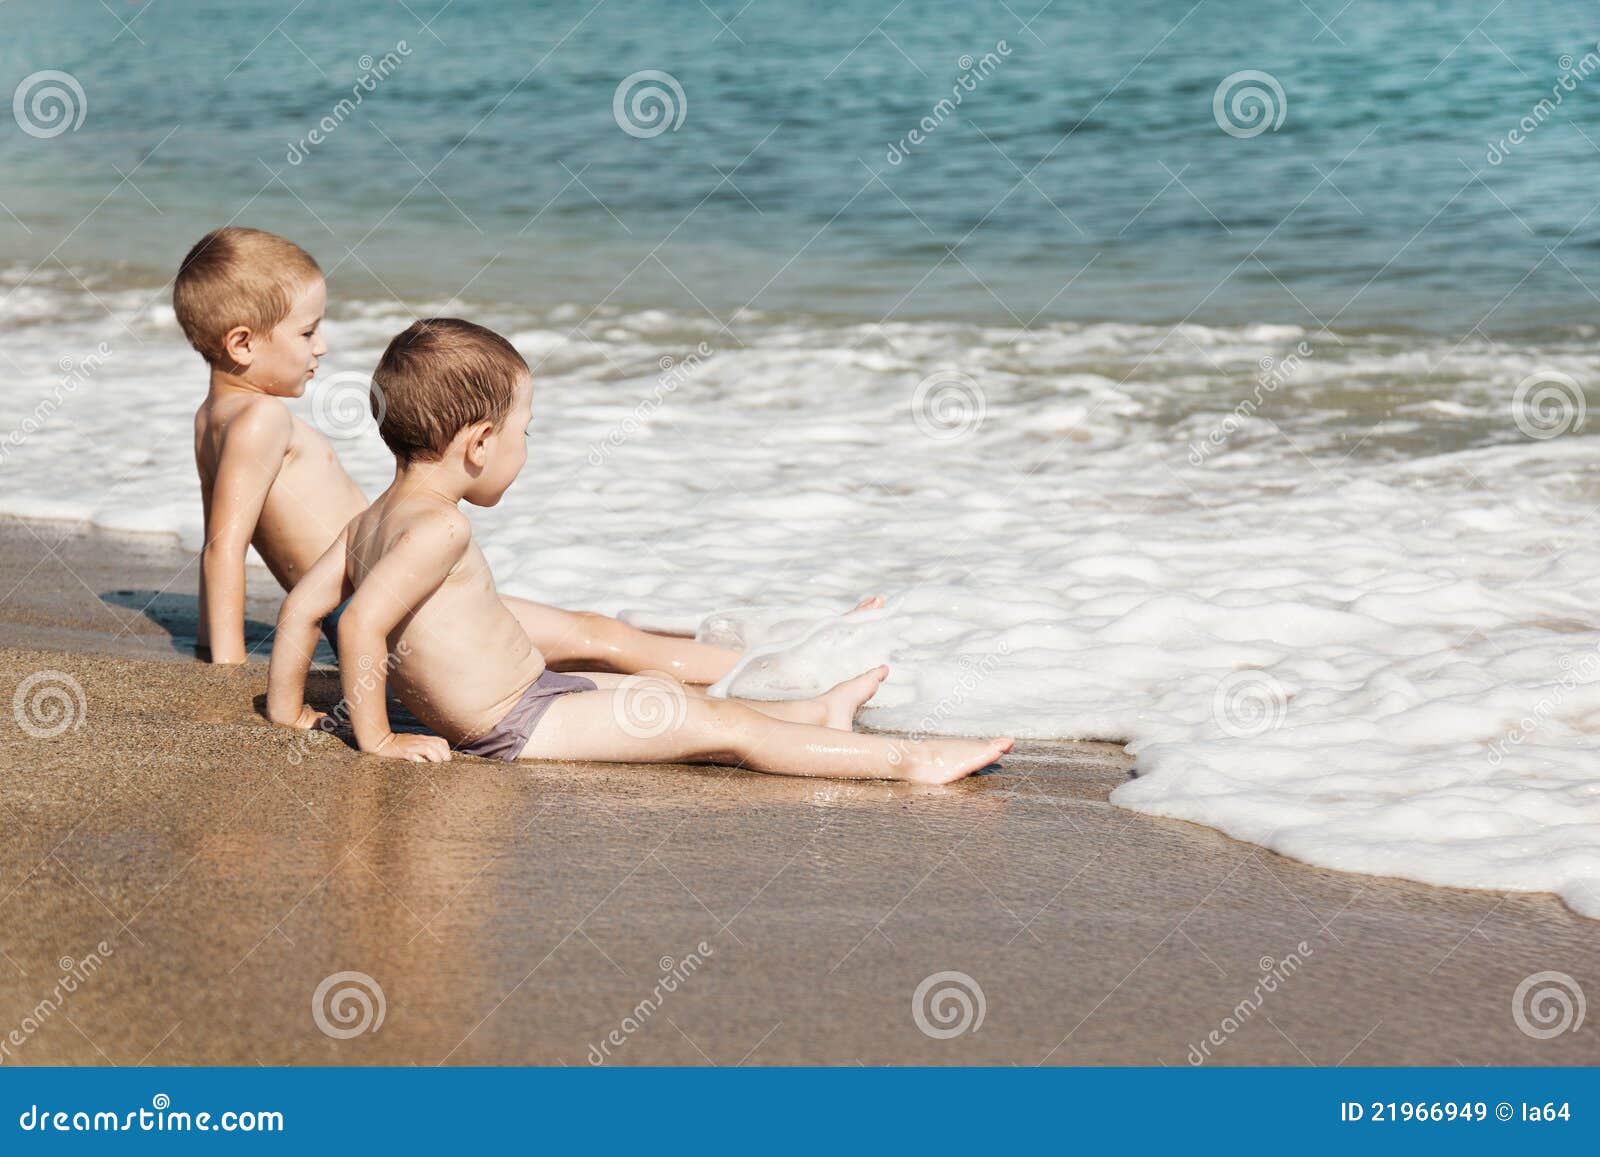 за голыми детьми на пляже фото 2